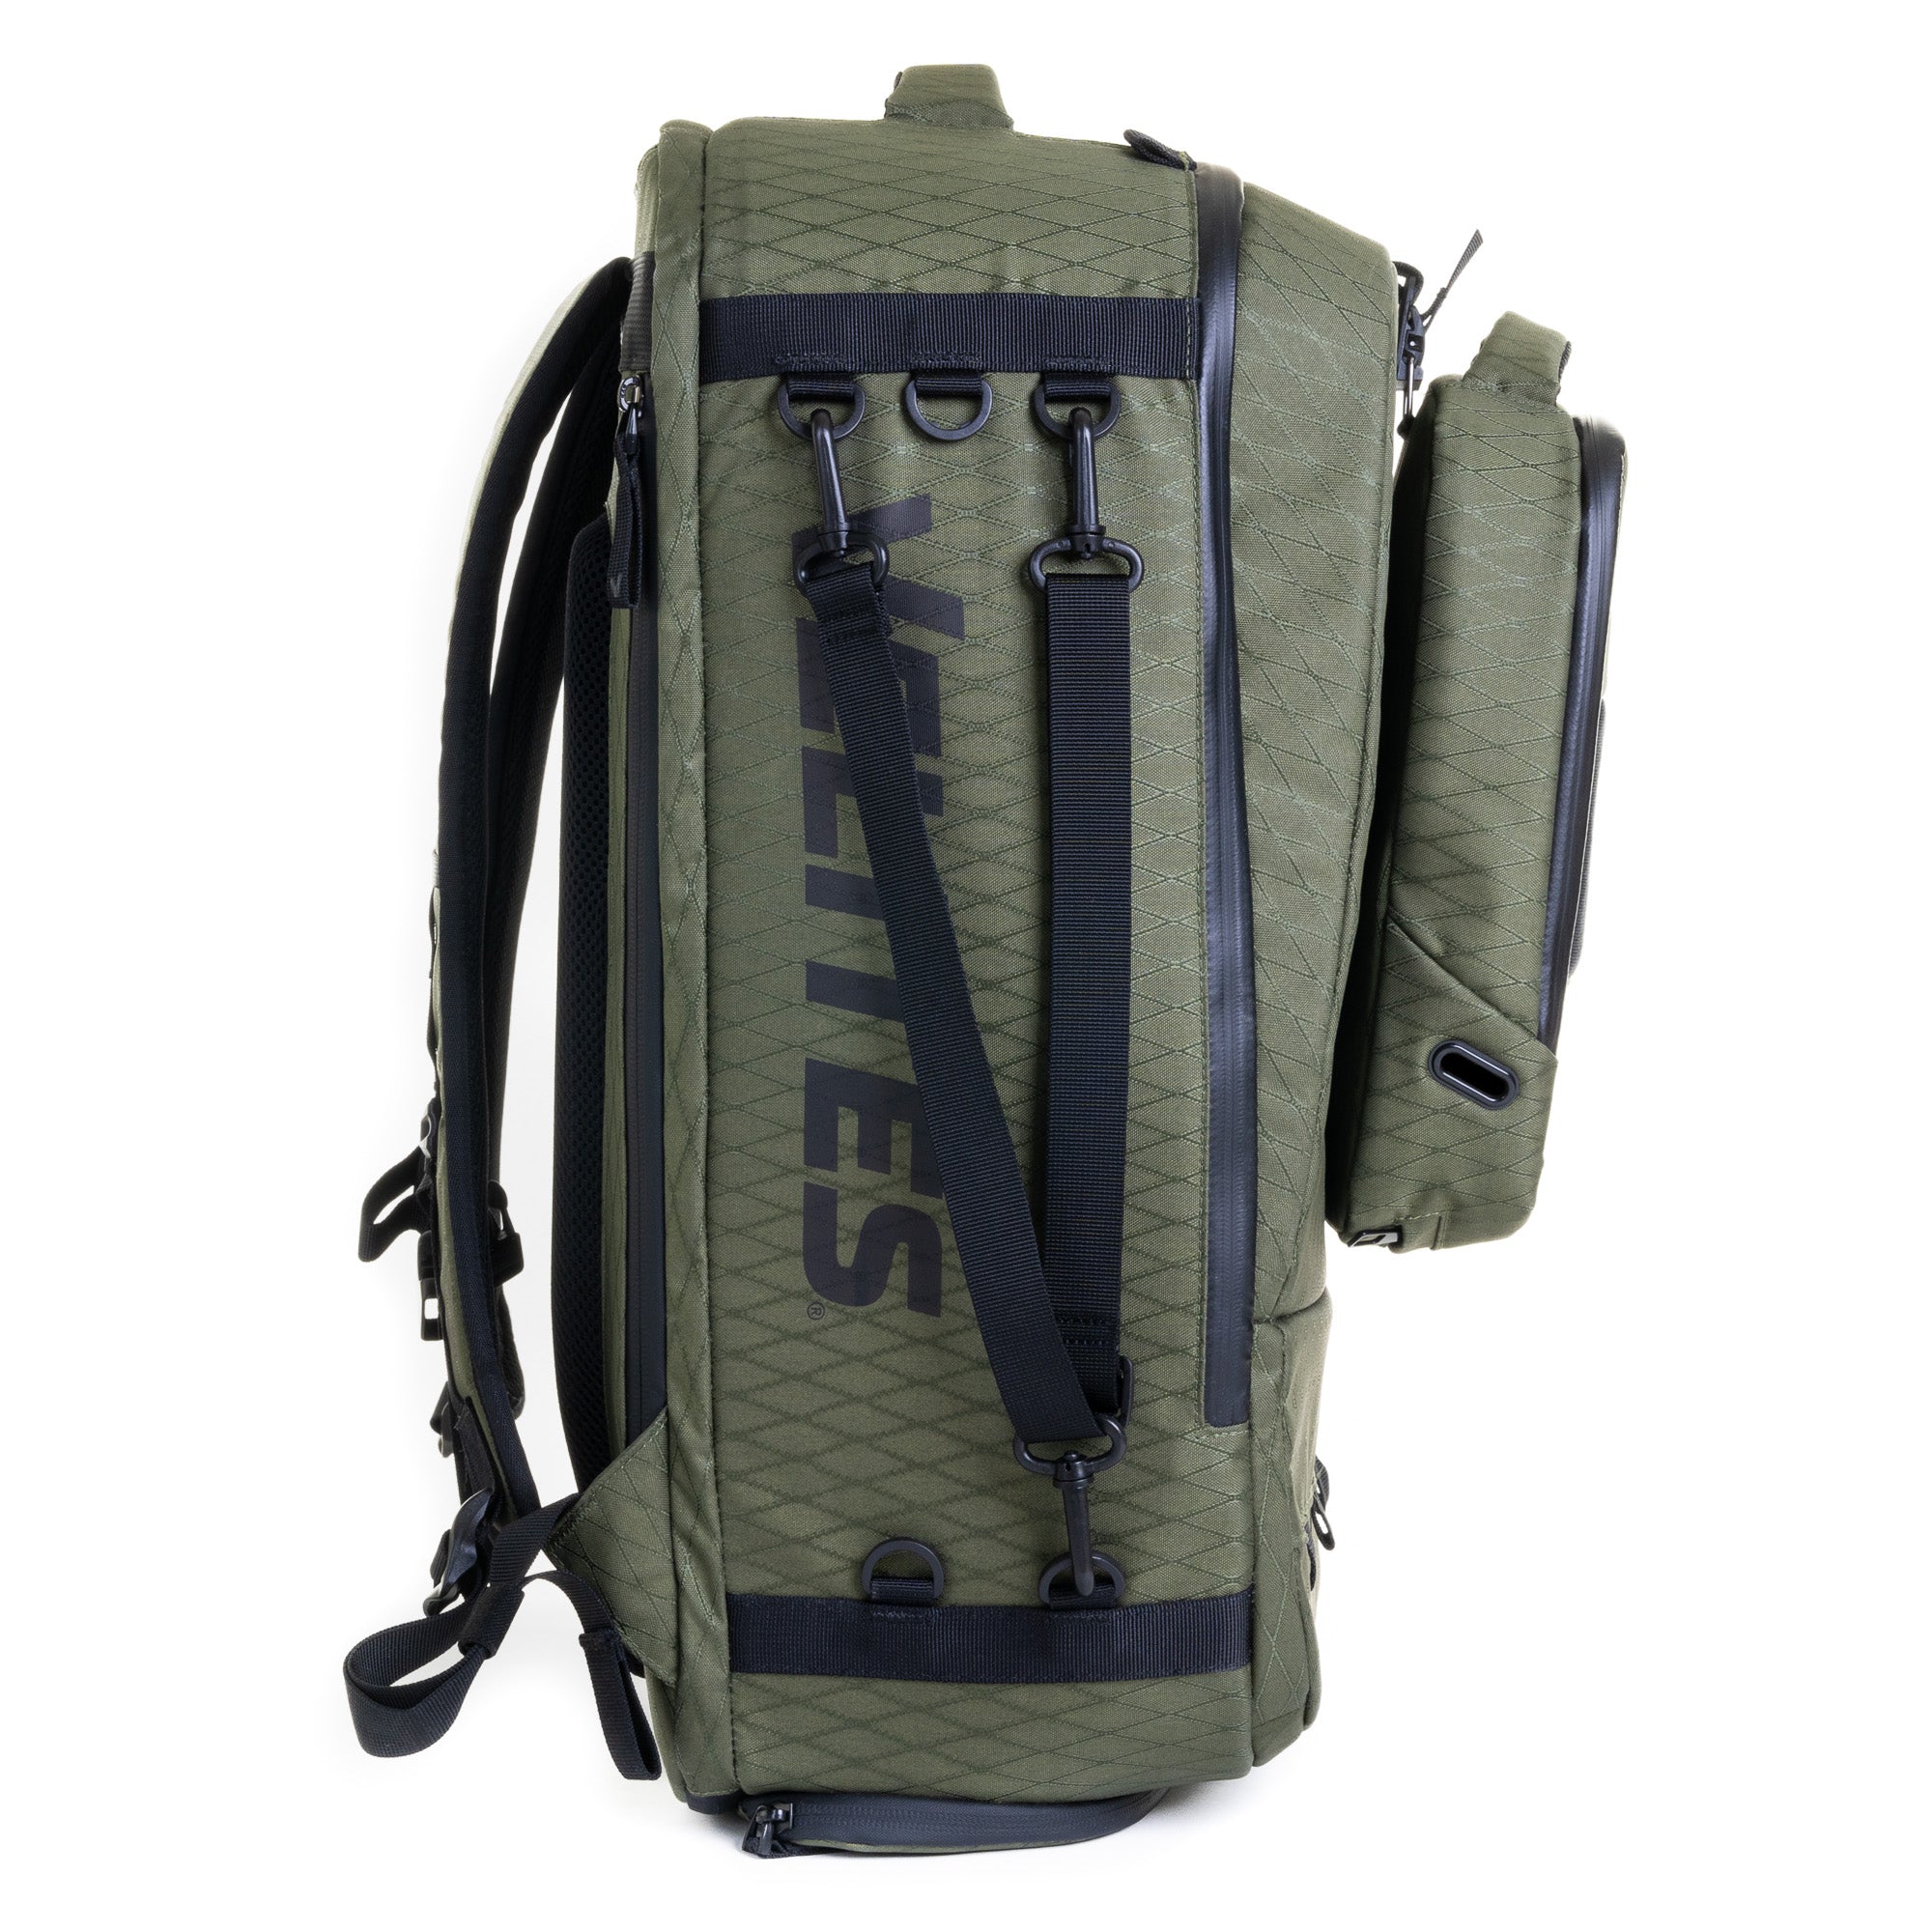 Pack Storm Duradiamond Olive backpack + Travel Compressor + Toiletry bag + Internal divider